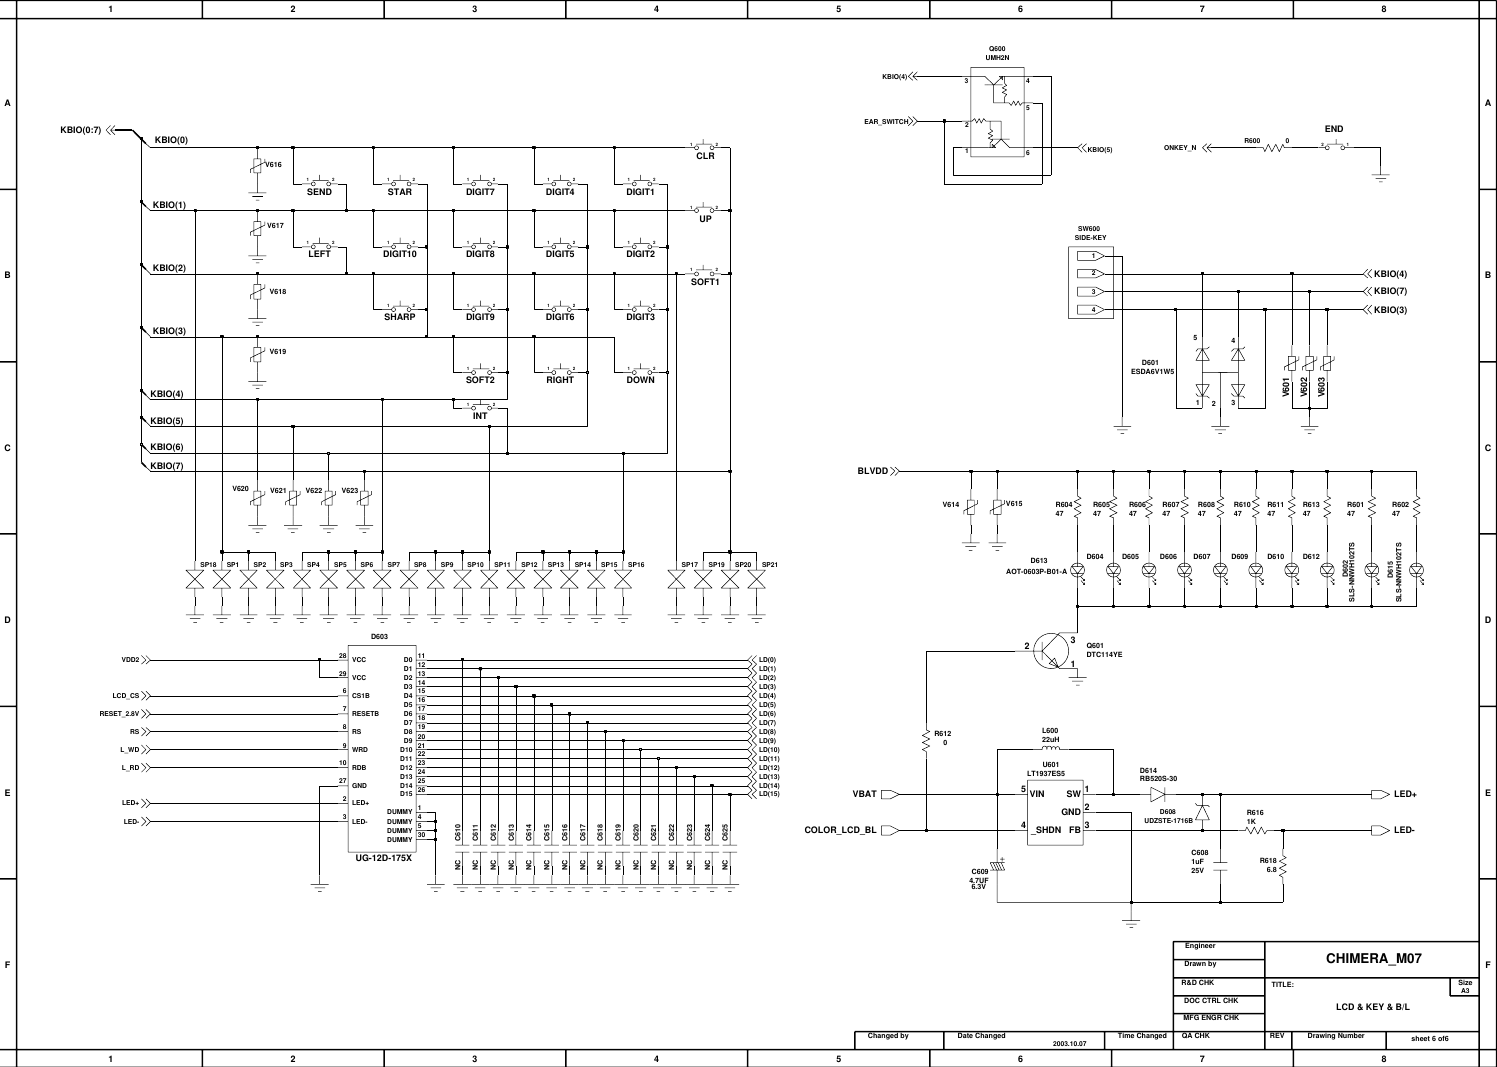 Page 8 of 9 - Samsung SGH-X600 - Schematics. Www.s-manuals.com. Schematics